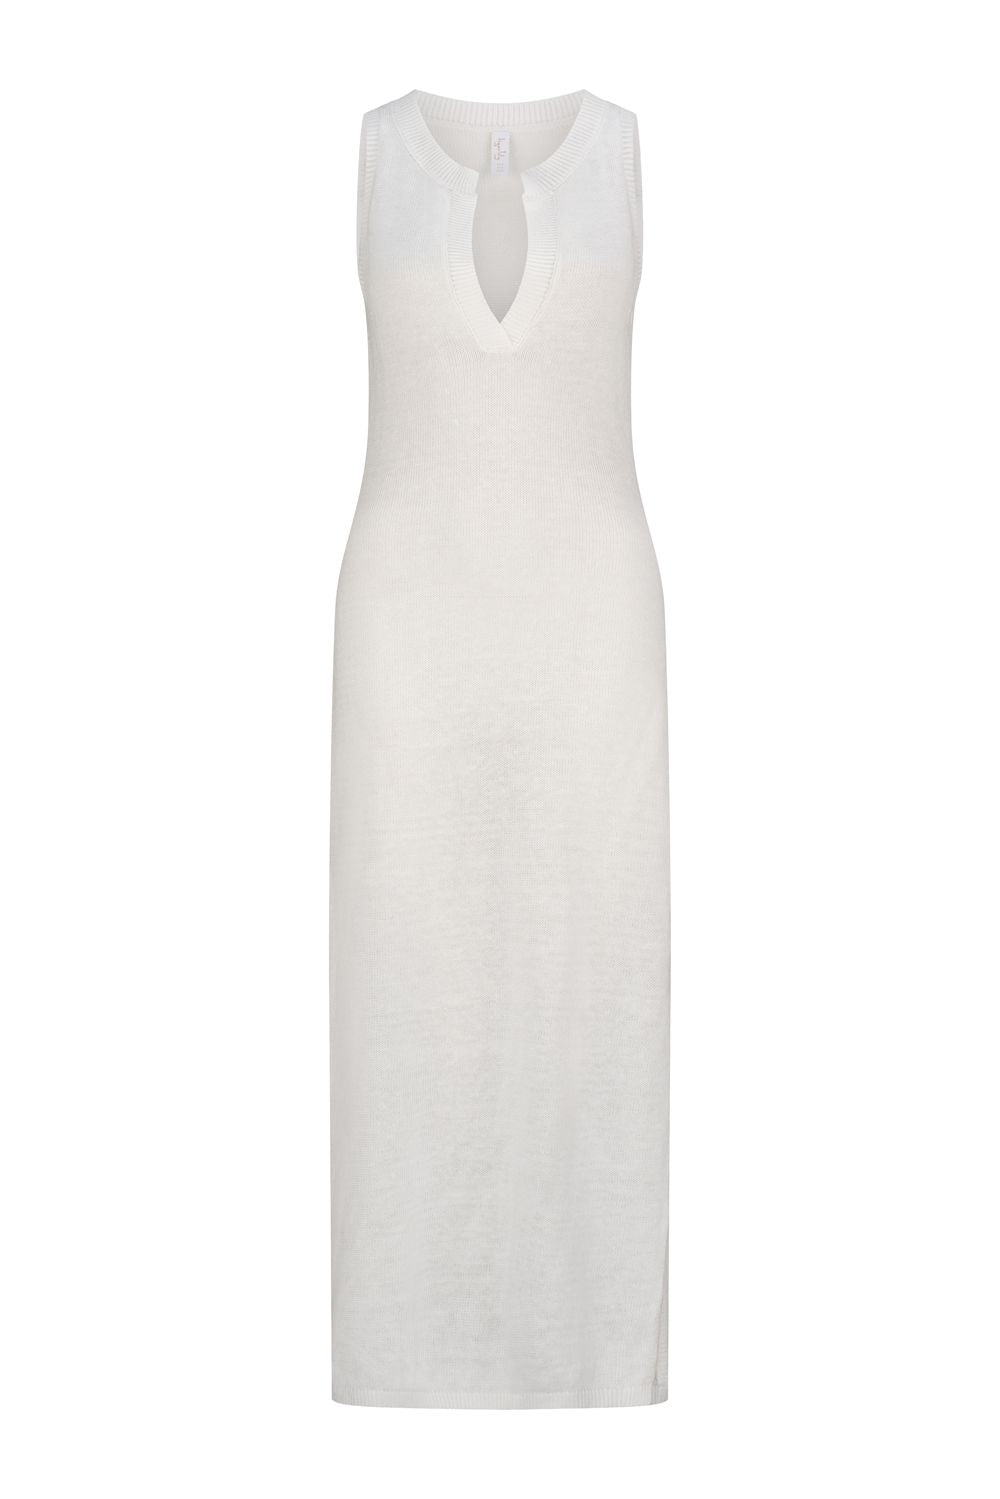 Marella Candace Sleeveless Midi Dress - White